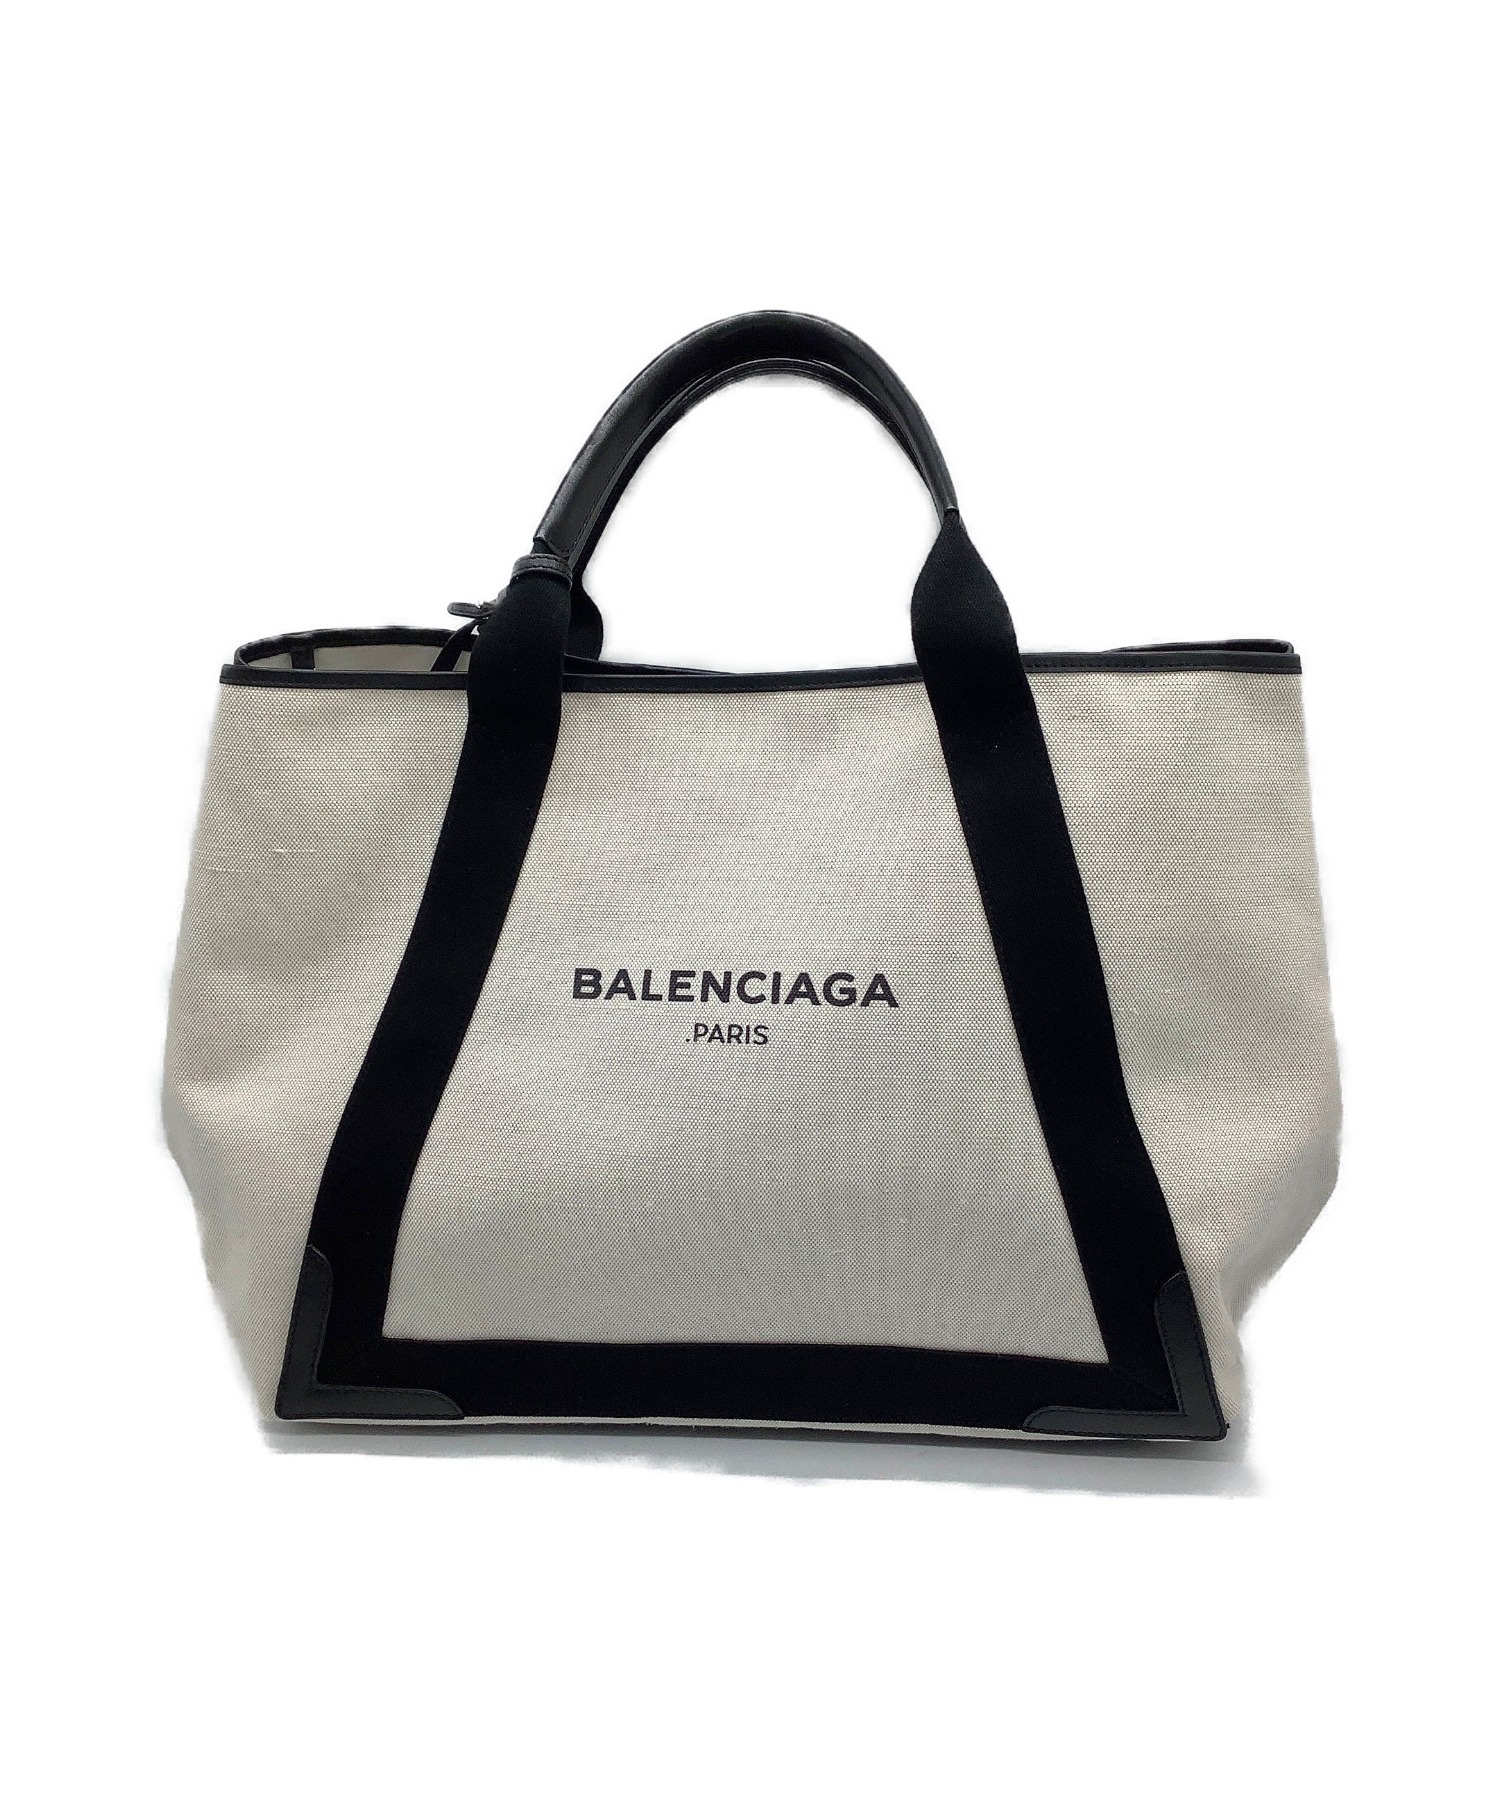 BALENCIAGA (バレンシアガ) キャンバストートバッグ ホワイト×ブラック